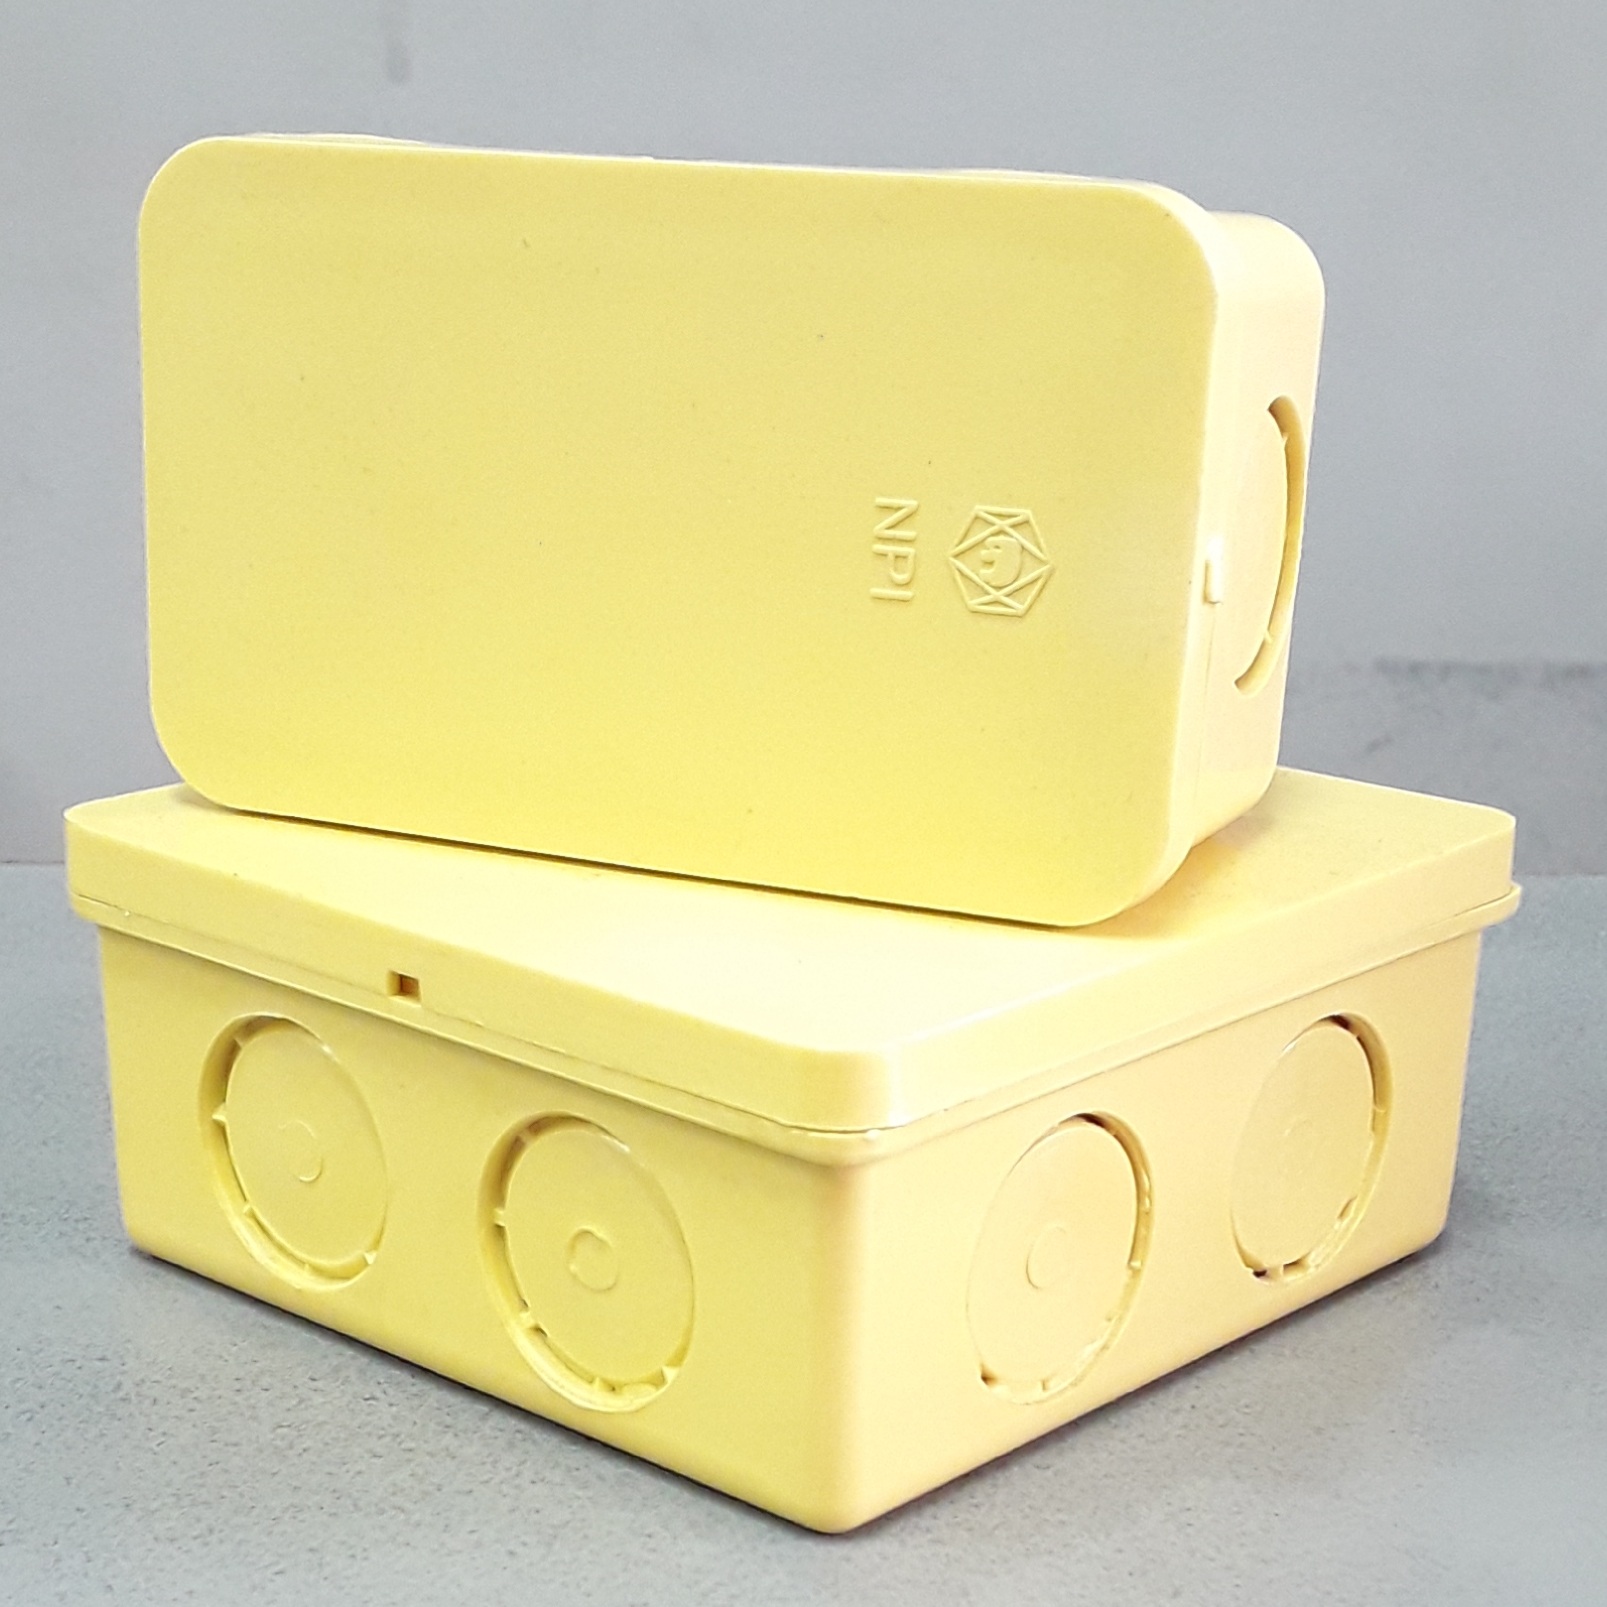 กล่องพักสายสี่เหลี่ยมเหลือง ตราช้าง